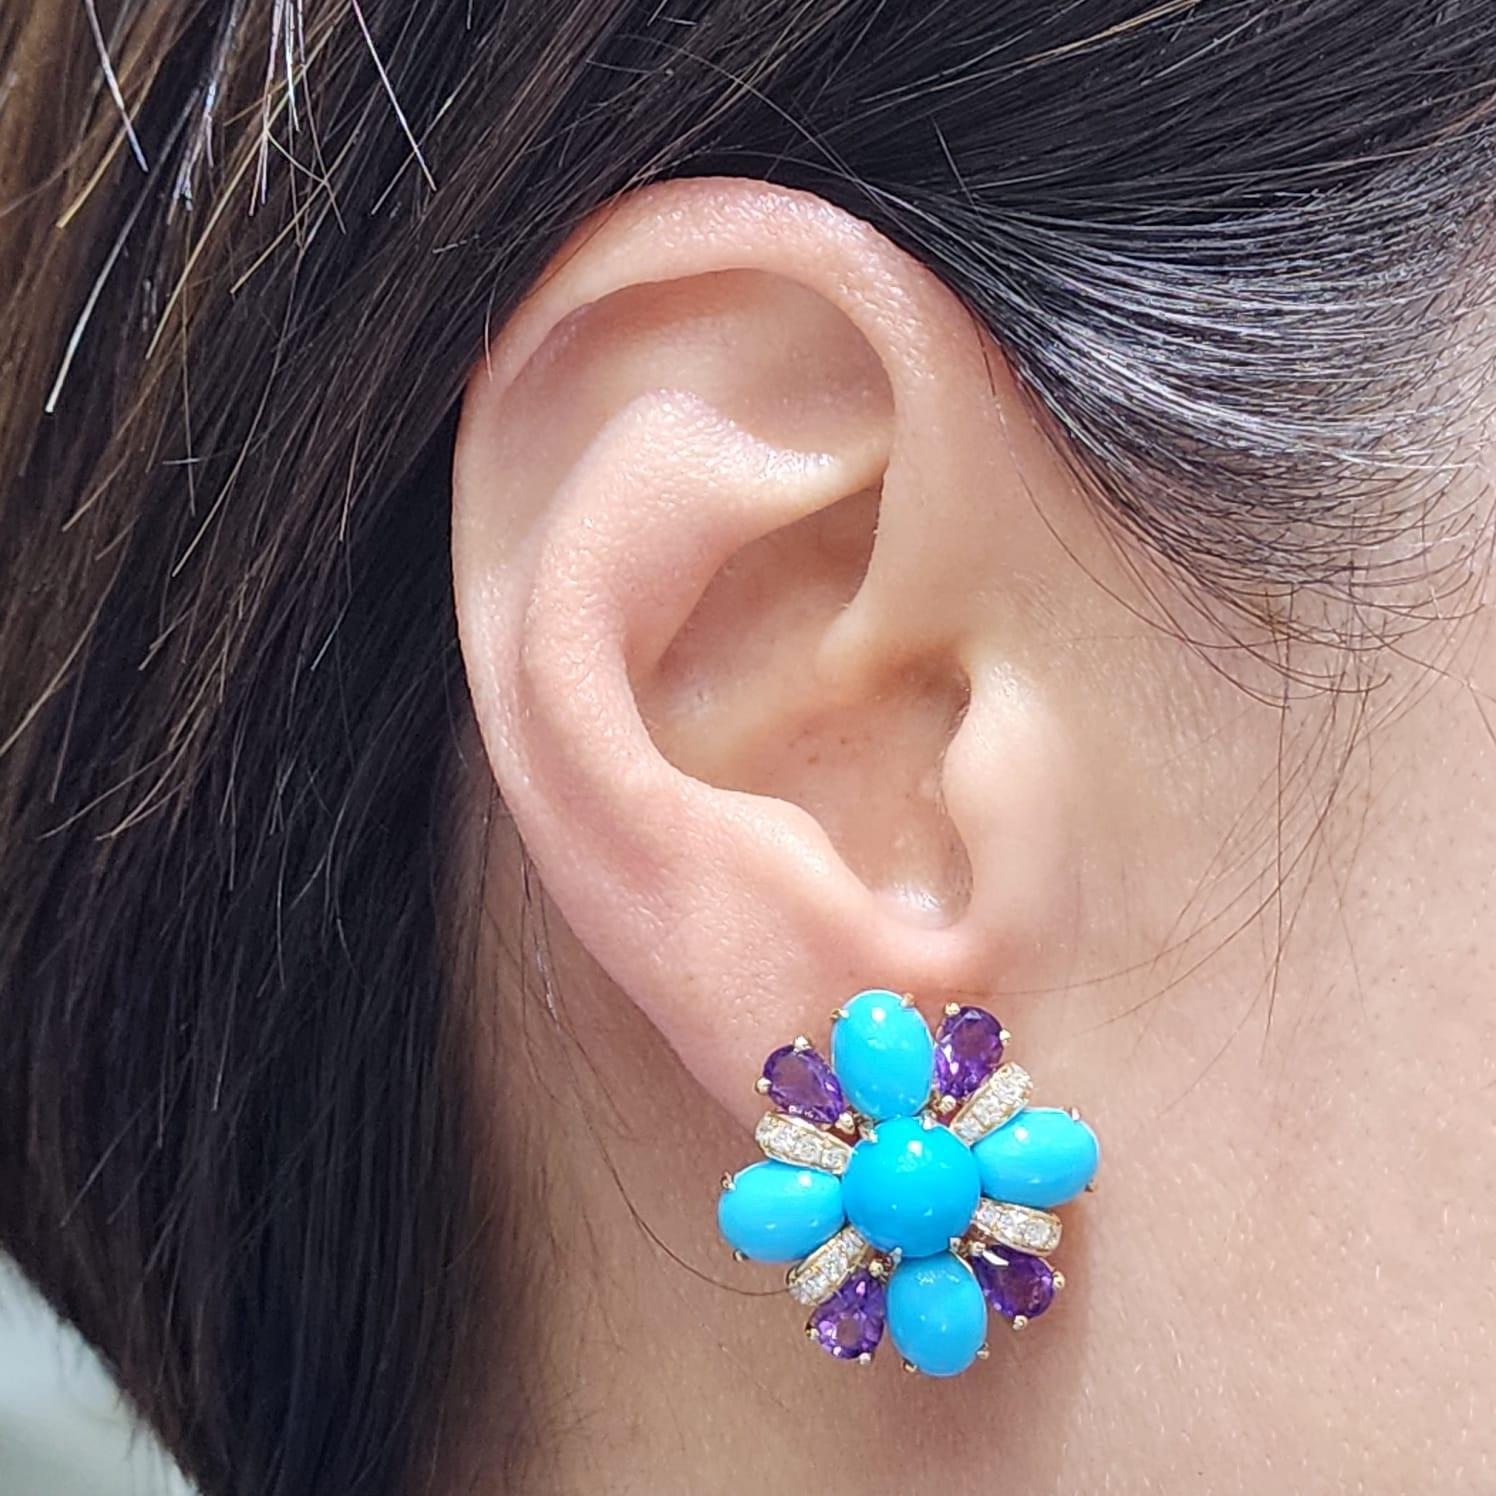 Diese lebhaften Ohrringe sind ein Fest der Farben und der Eleganz. Mit 0,41 Karat Diamanten, 3,72 Karat rundem Türkis und 8,48 Karat ovalem Türkis verziert, strahlen die Ohrringe das ruhige Blau des Ozeans aus. Diese beruhigenden Blautöne werden